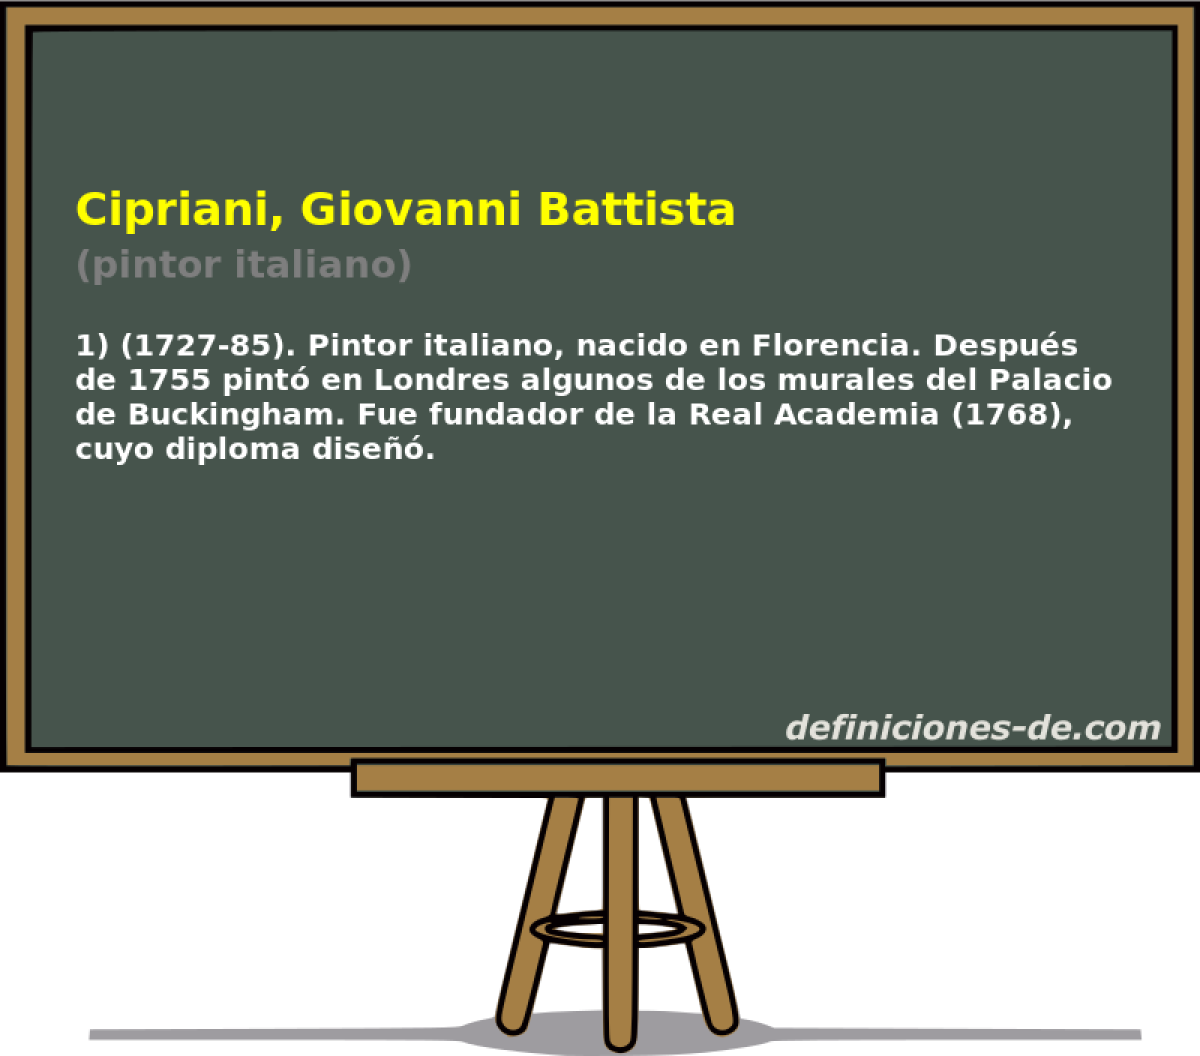 Cipriani, Giovanni Battista (pintor italiano)